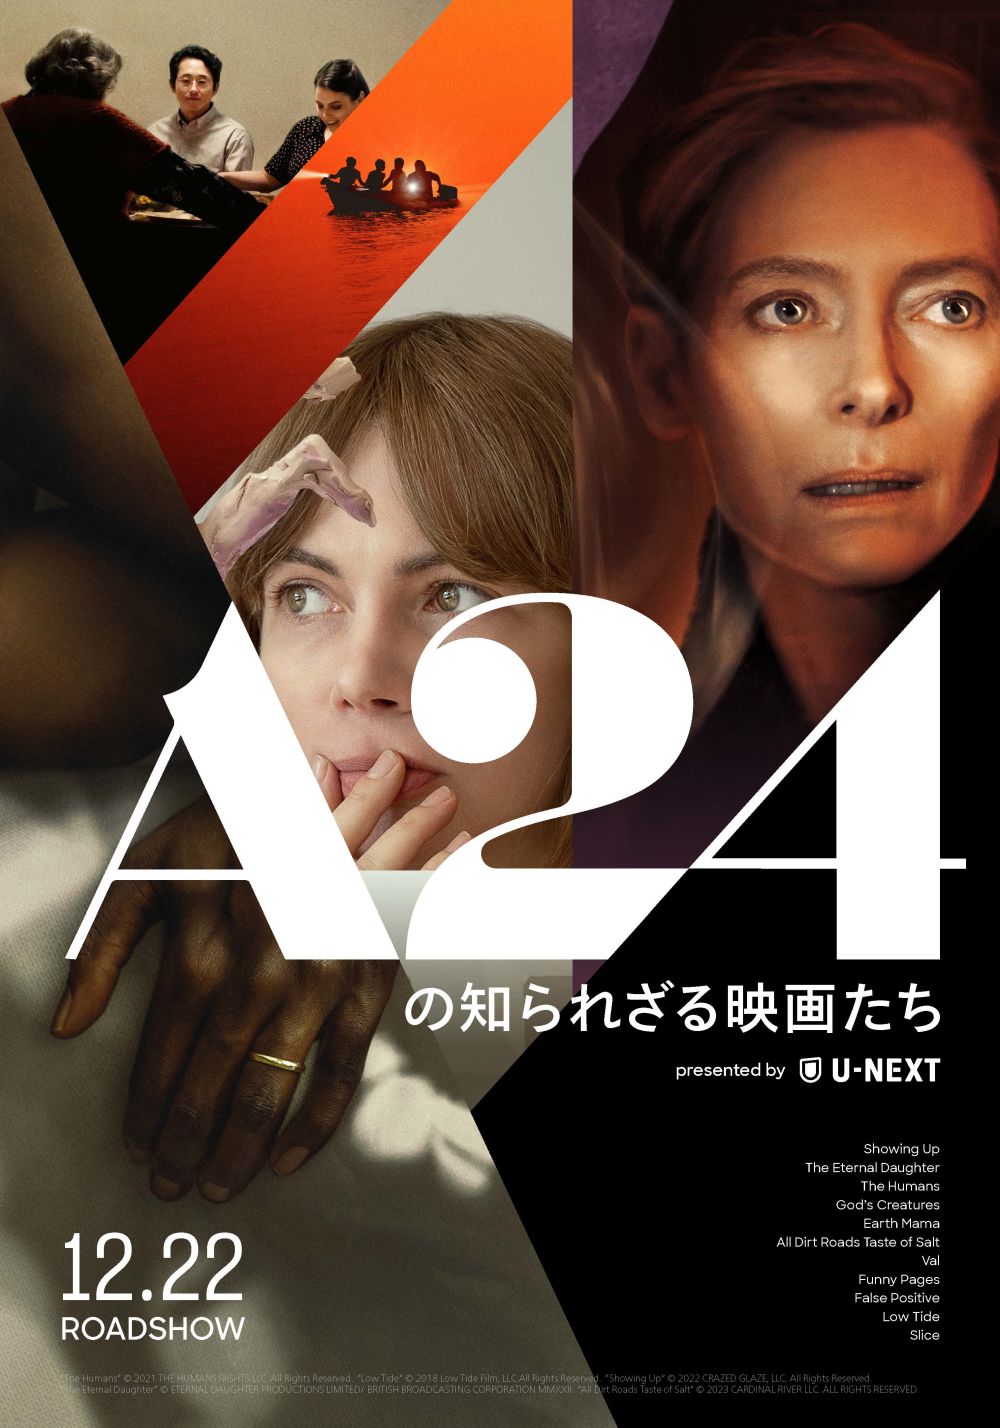 すべてがA24。すべてが日本初公開。ケリー・ライカート監督最新作『ショーイング・アップ』含む11作品の特集上映決定。「A24の知られざる映画たち presented by U-NEXT」、12月22日（金）より4週間限定開催！